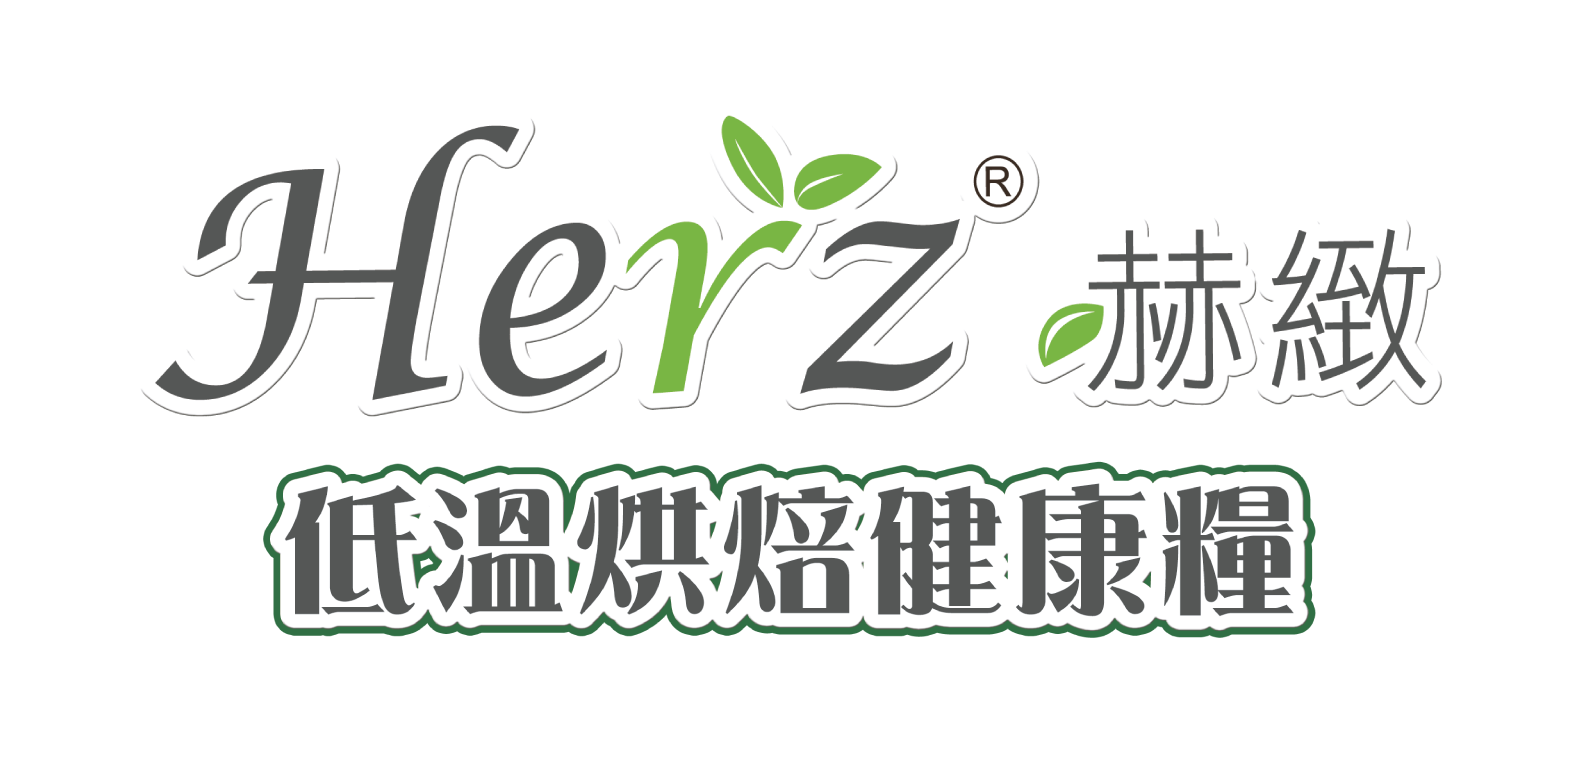 herz-logo.png